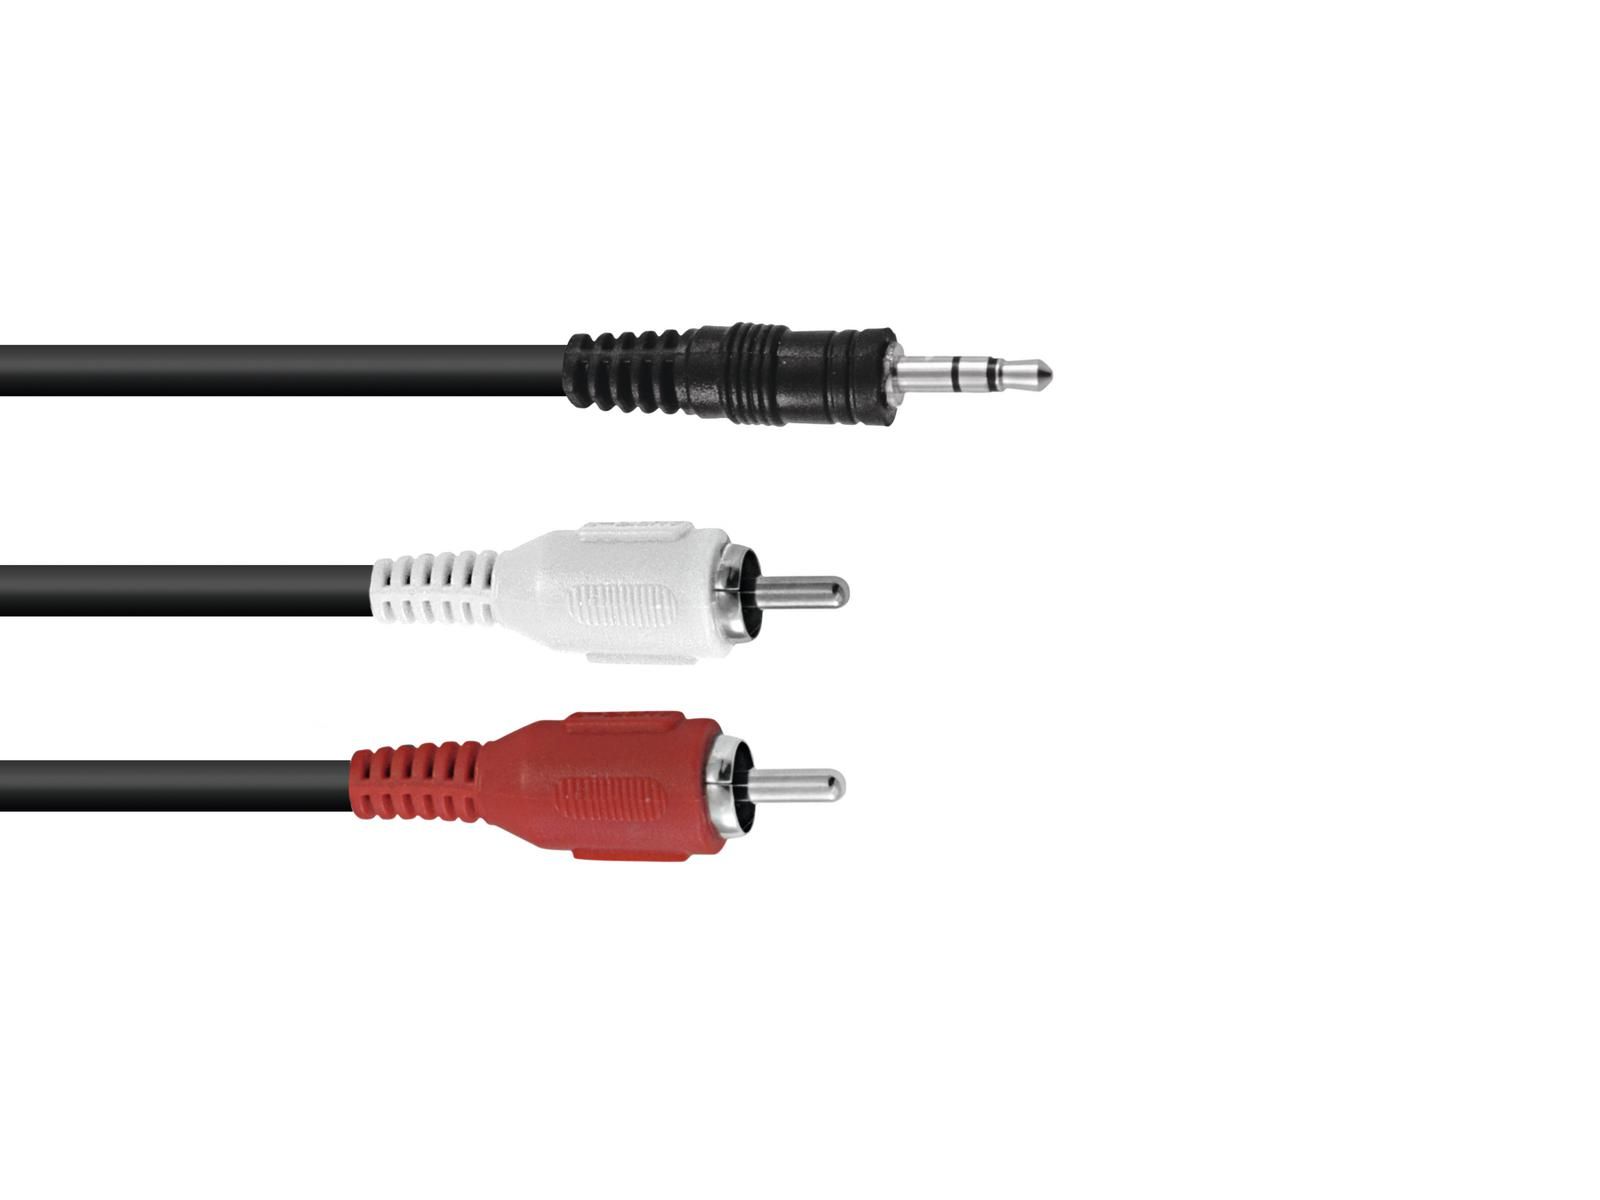 Cablu Omnitronic 3.5 Jack/2xRCA 5m negru